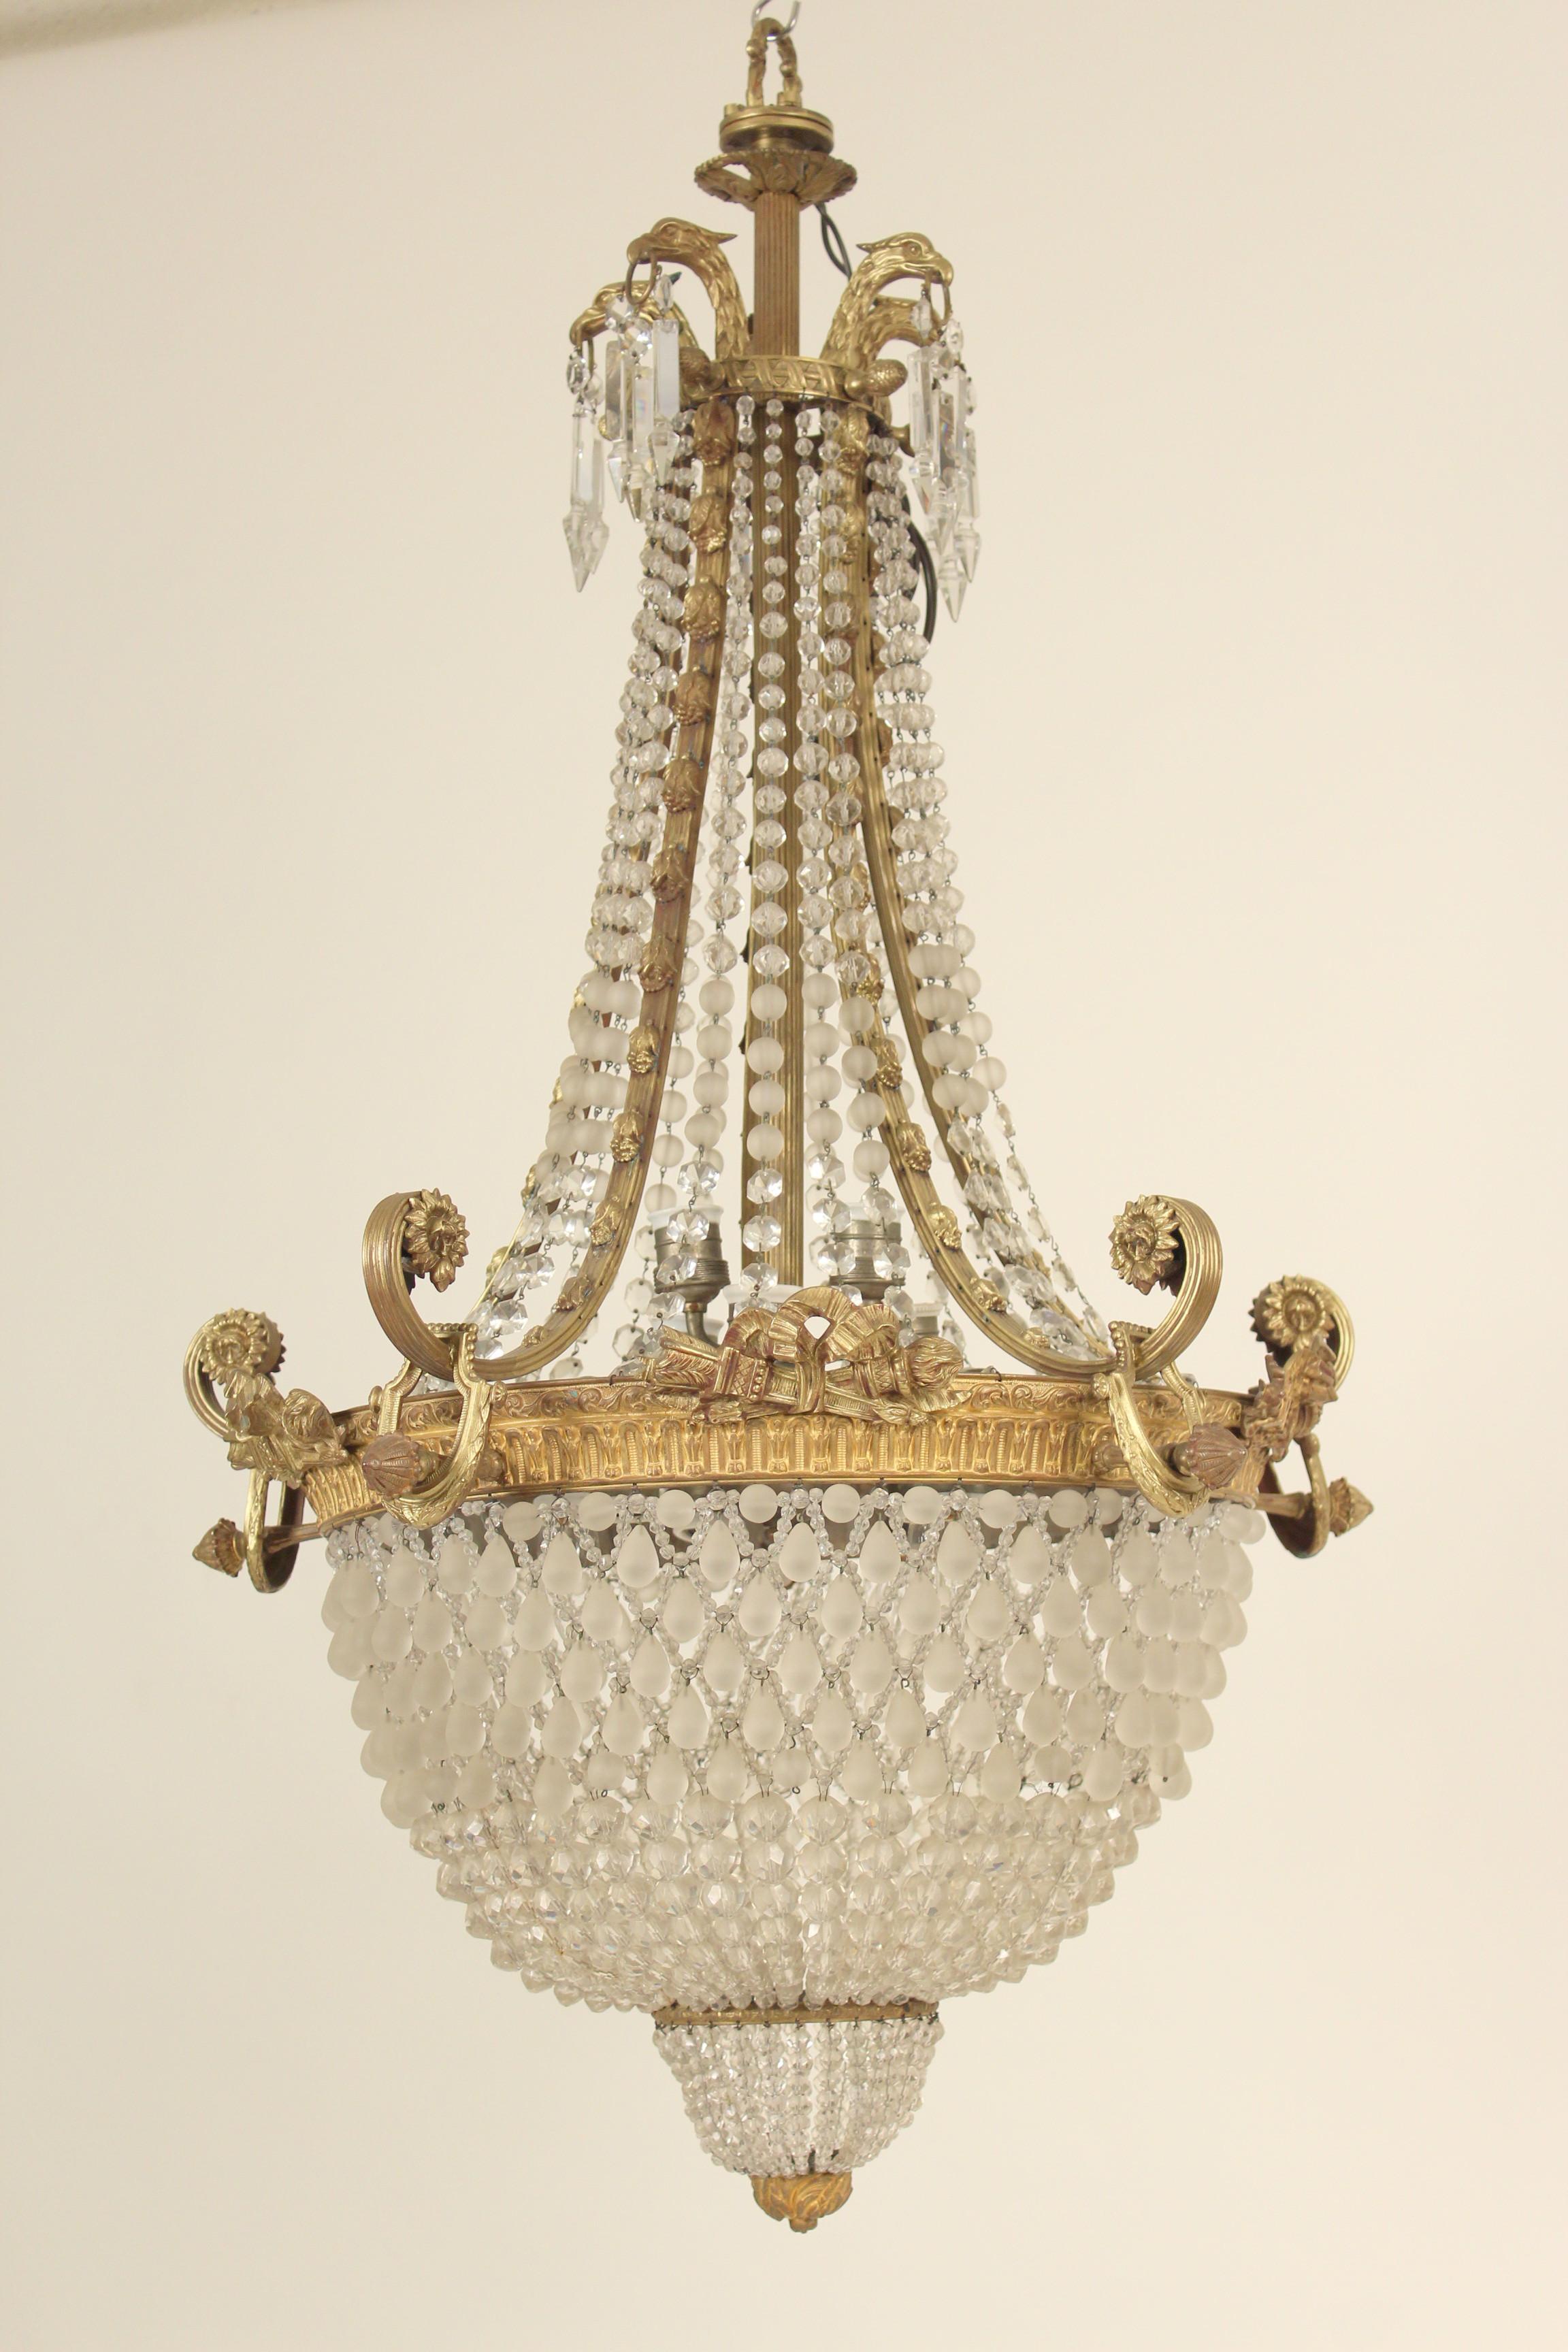 Neoklassizistischer Kronleuchter aus vergoldeter Bronze, Kristallperlen und mattiertem Glas, mit 10 Innenleuchten, um 1930.